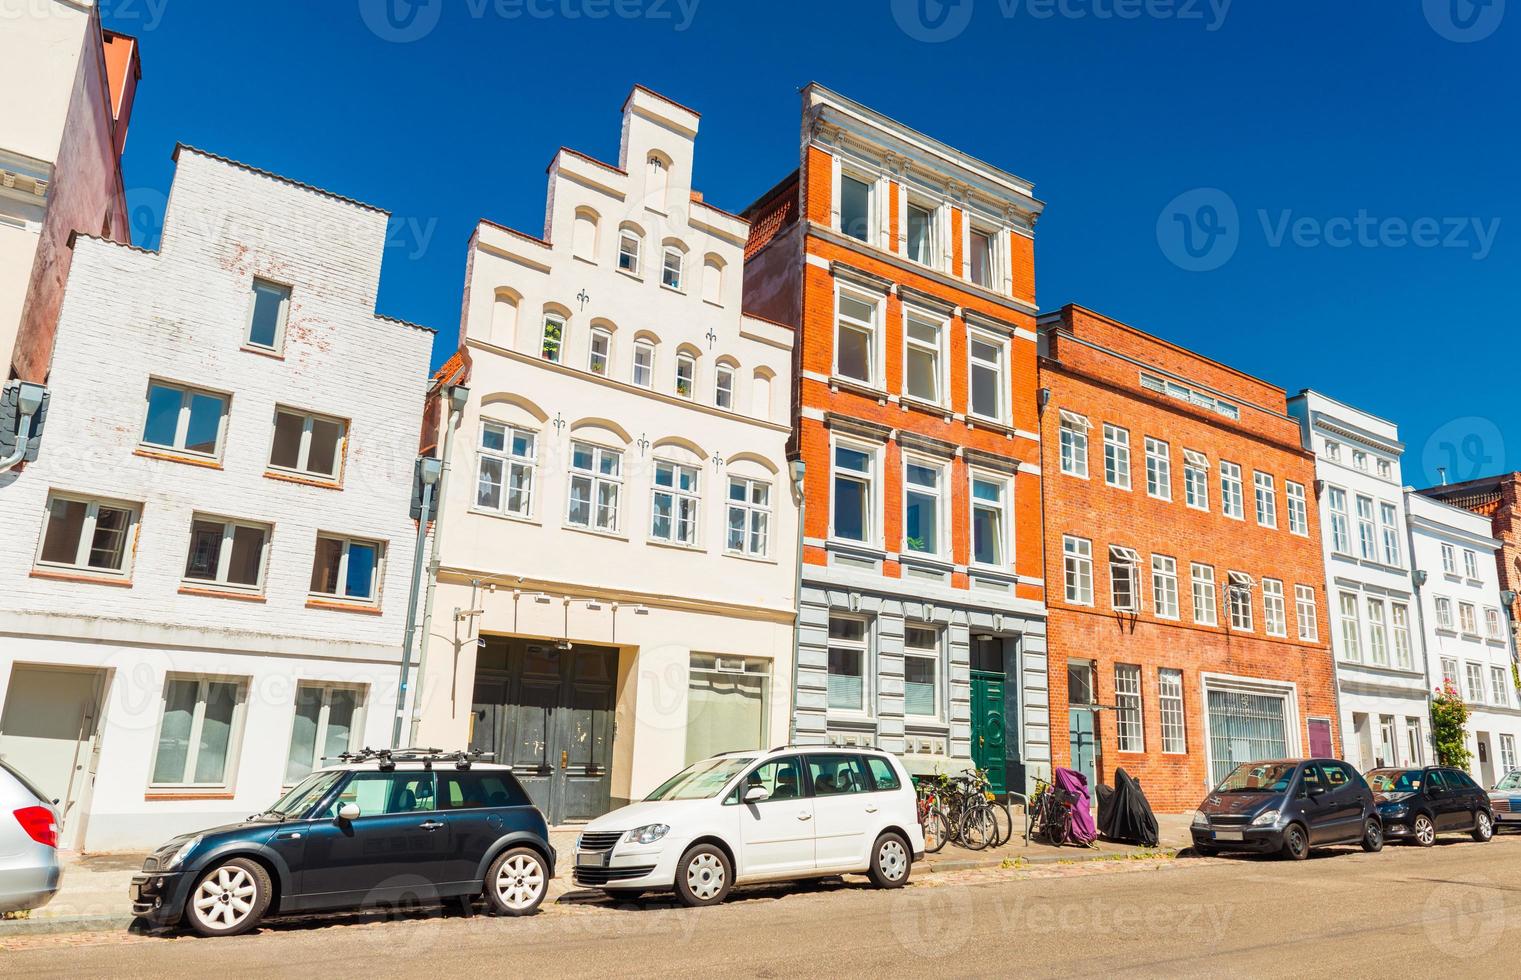 una calle de una antigua ciudad alemana. coches modernos aparcados cerca de una hilera de diferentes edificios históricos. Lubeck, Alemania foto